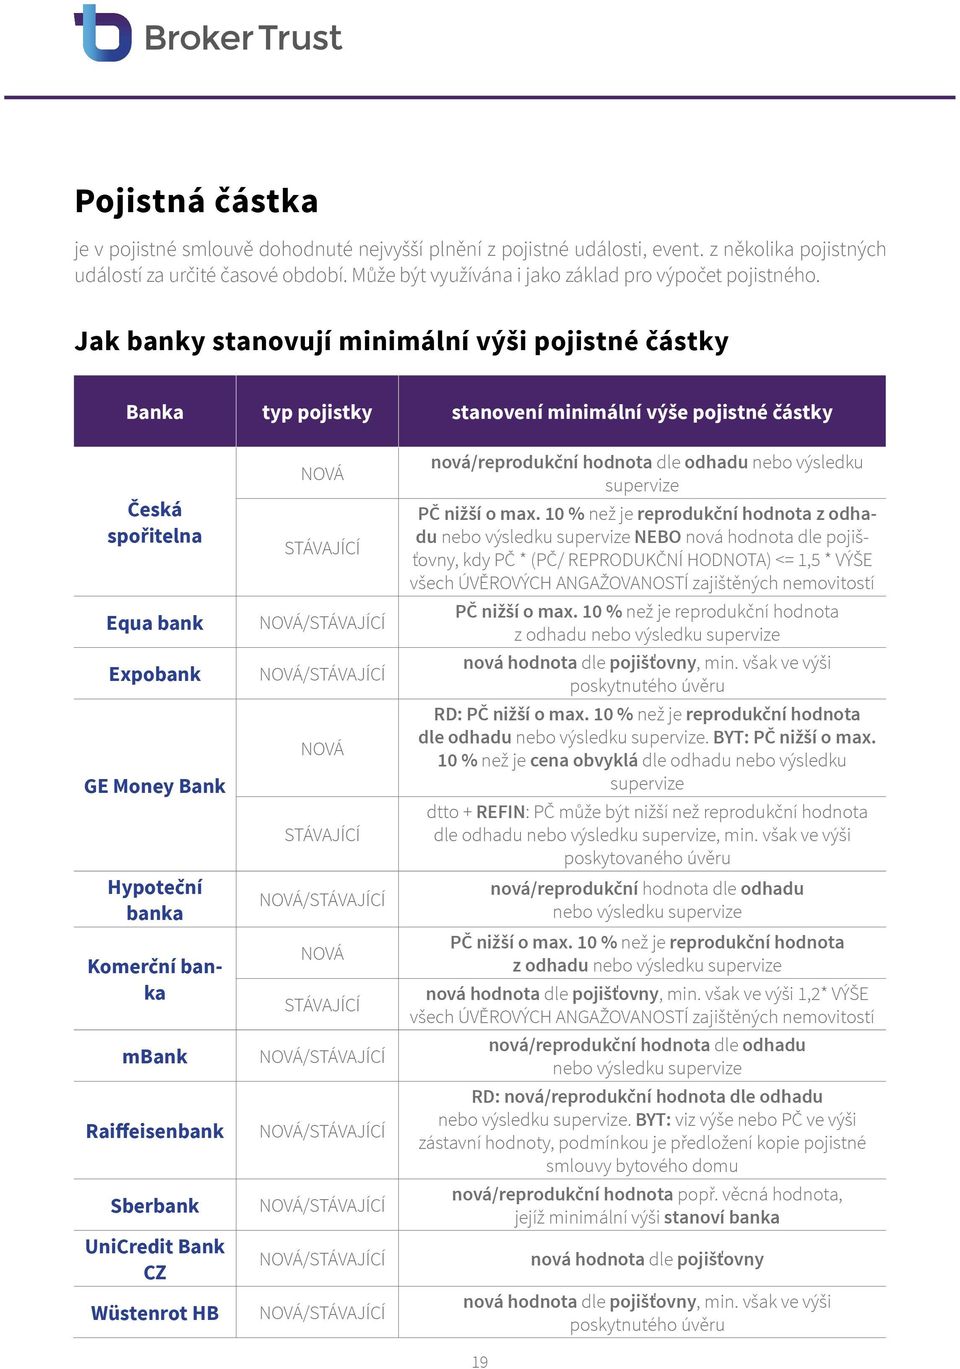 Jak banky stanovují minimální výši pojistné částky Banka typ pojistky stanovení minimální výše pojistné částky Česká spořitelna Equa bank Expobank GE Money Bank Hypoteční banka Komerční banka mbank